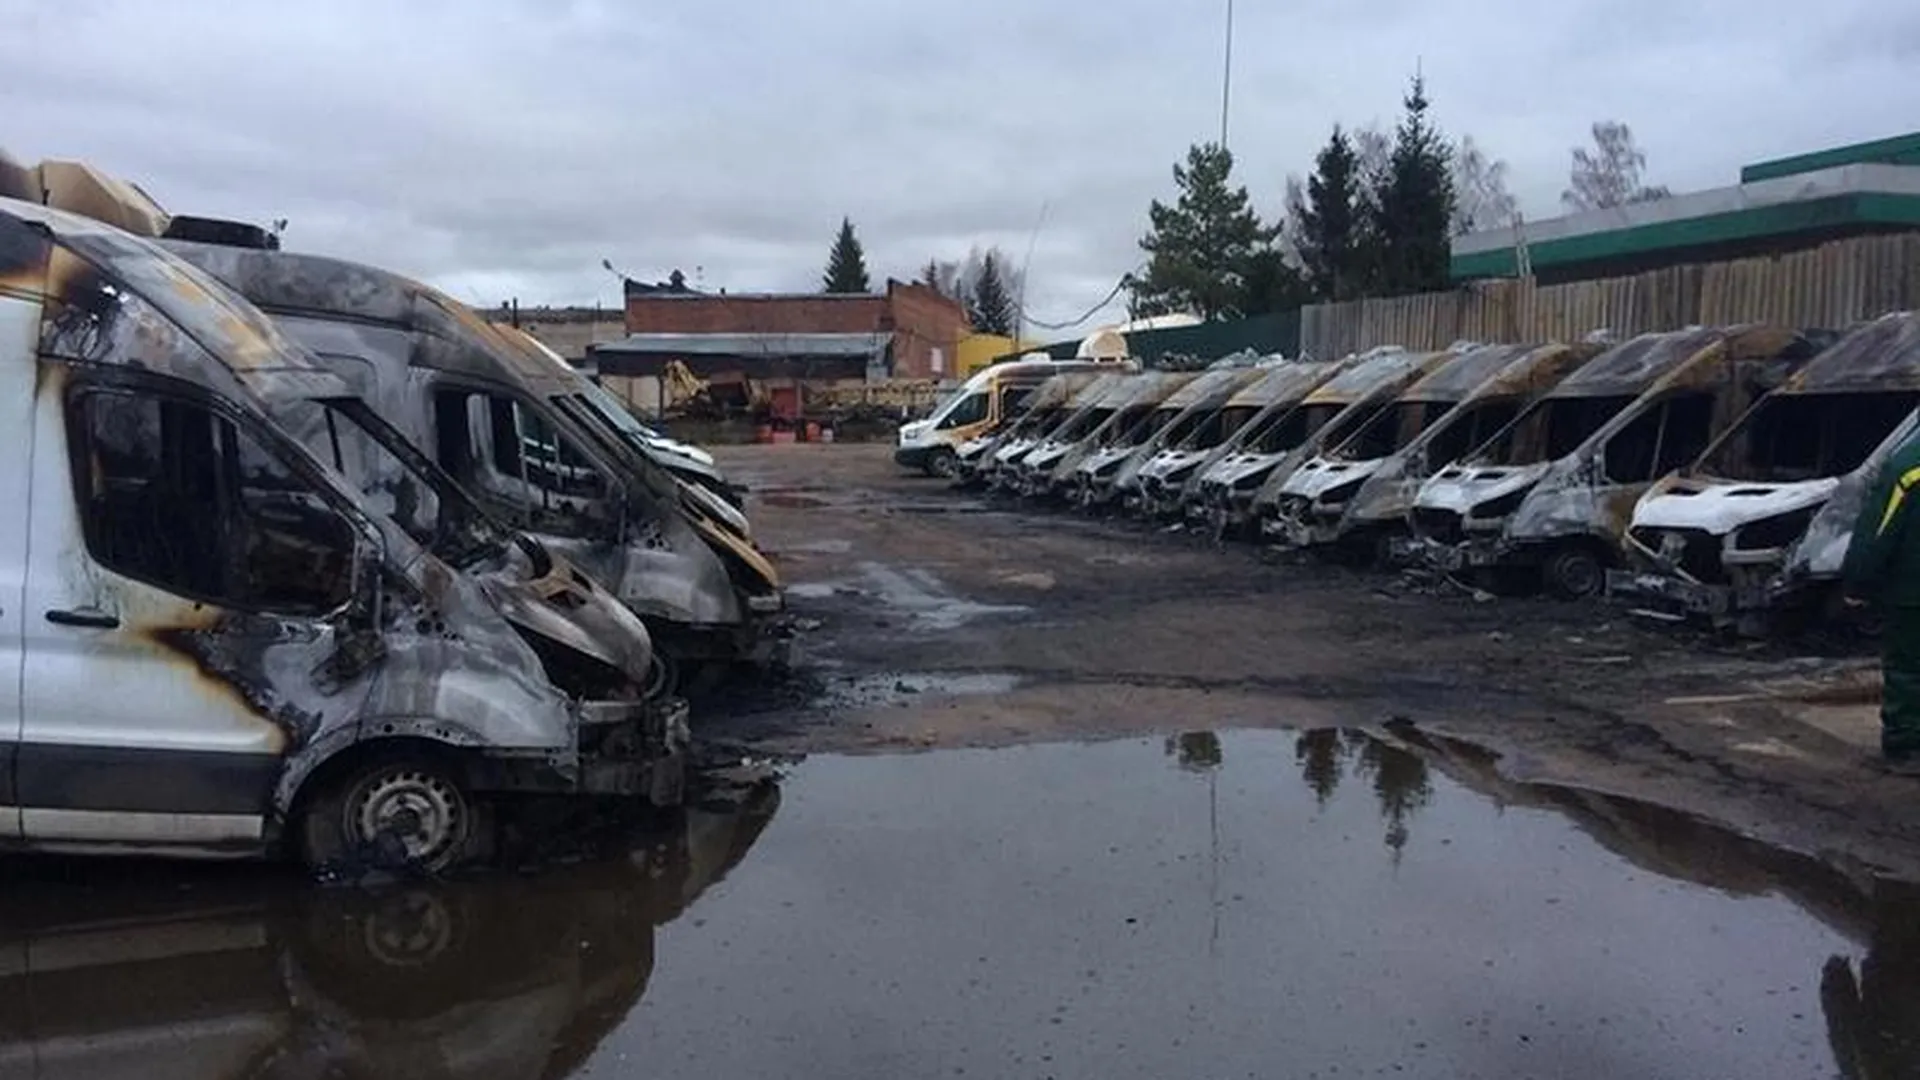 МВД проведет проверку по факту пожара на стоянке в Раменском, сгорели сразу 13 мобильных комплексов видеофиксации 